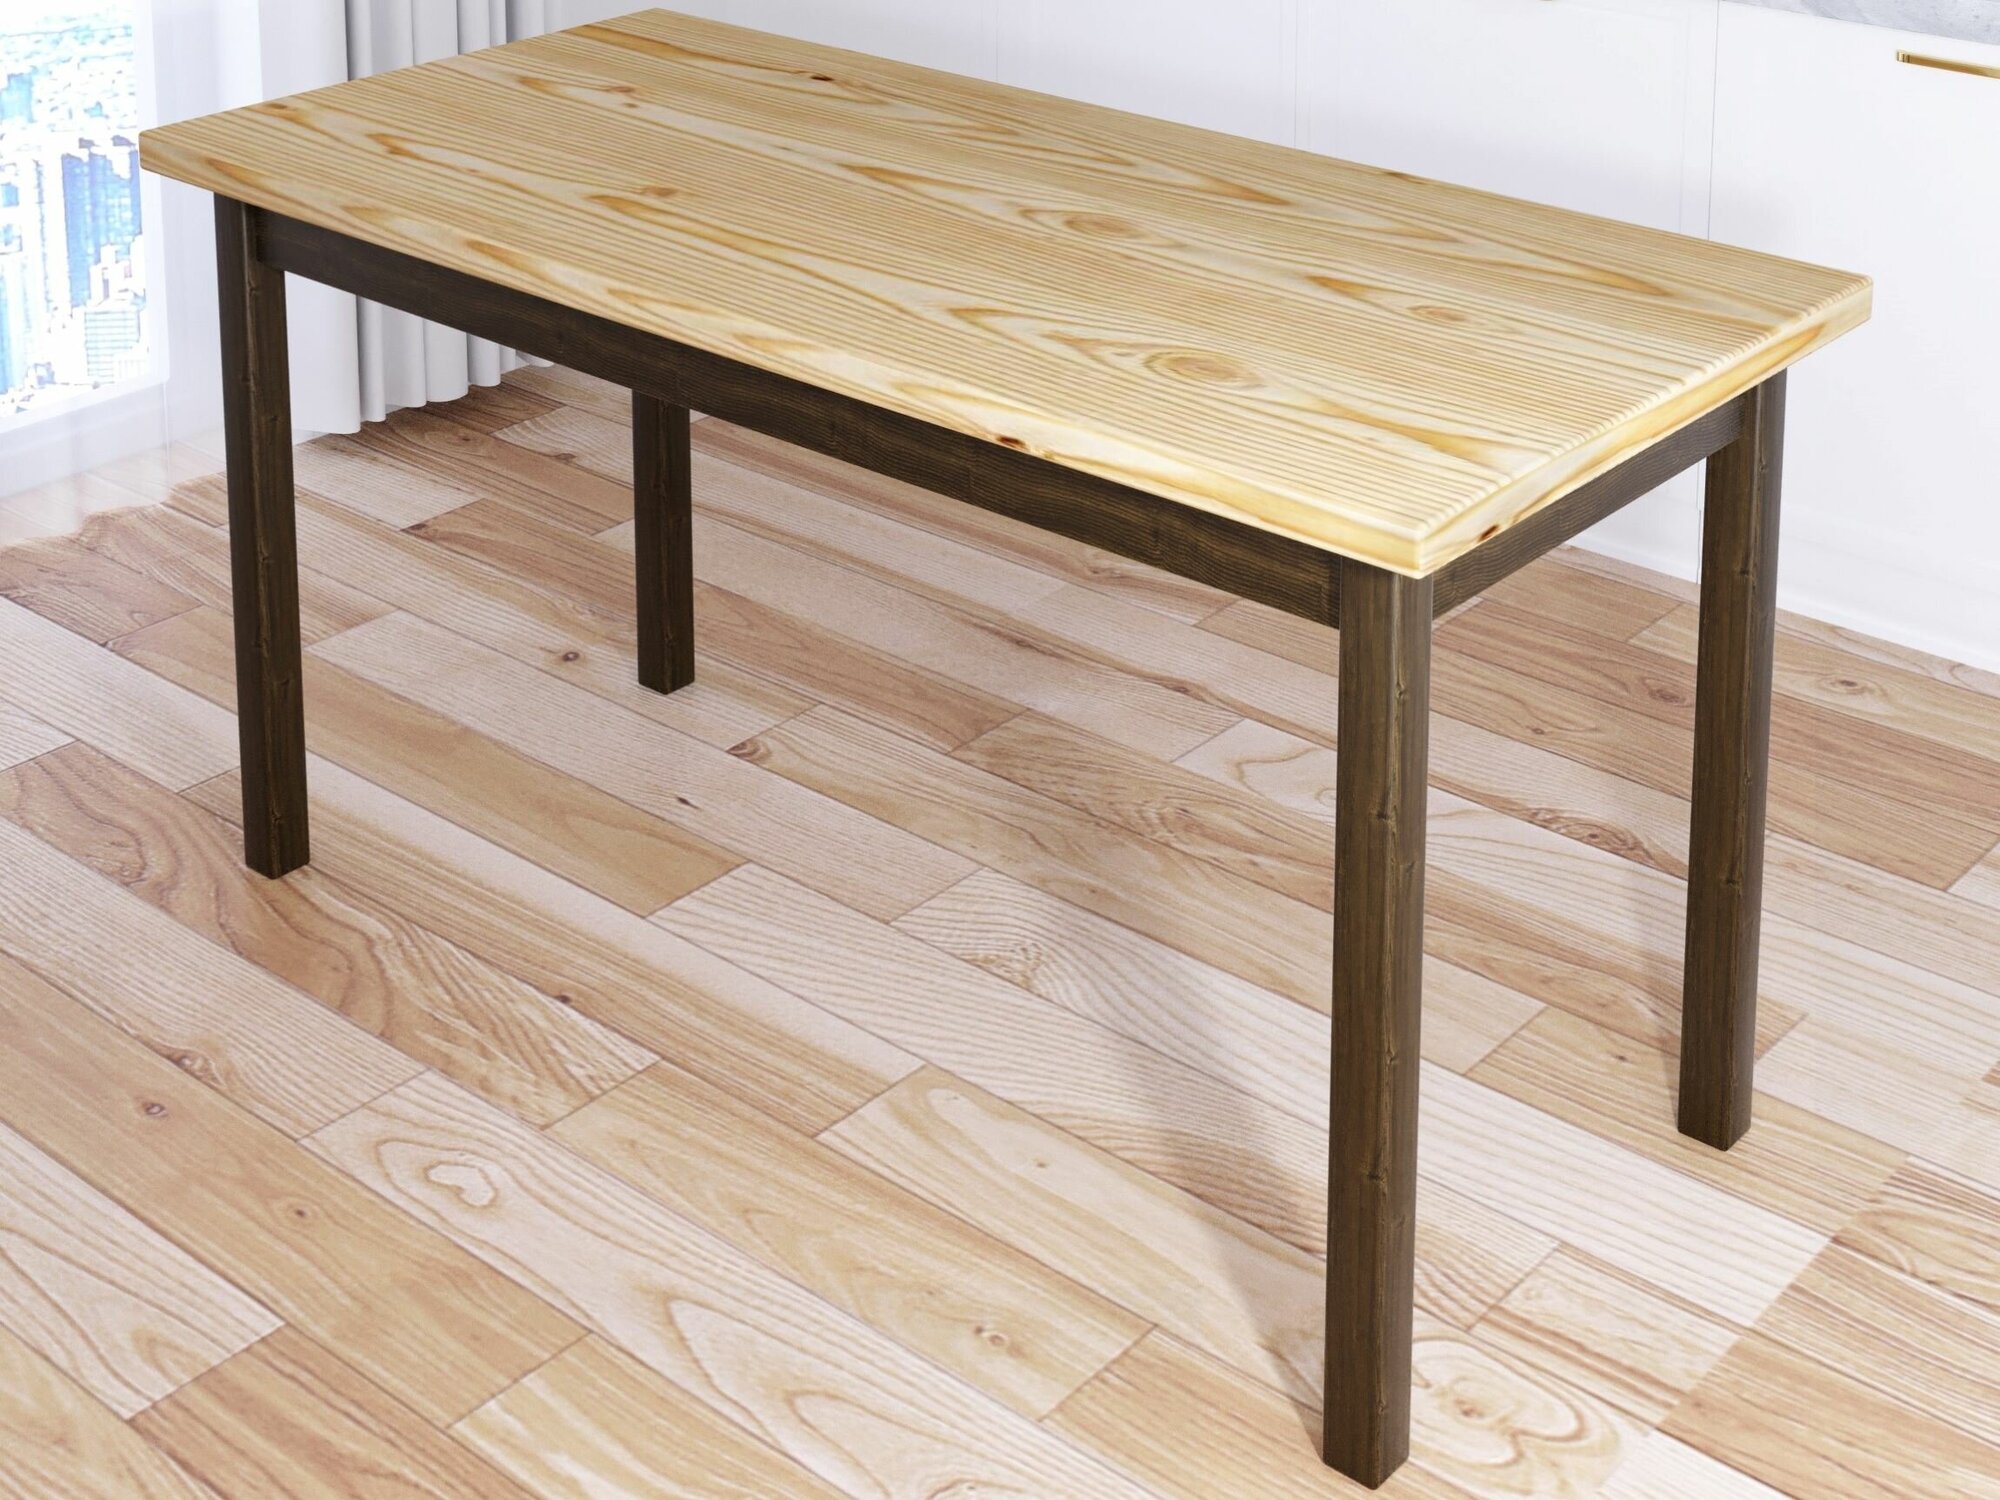 Стол кухонный Классика из массива сосны, лакированная столешница 40 мм и ножки цвета темного дуба, 130х70х75 см